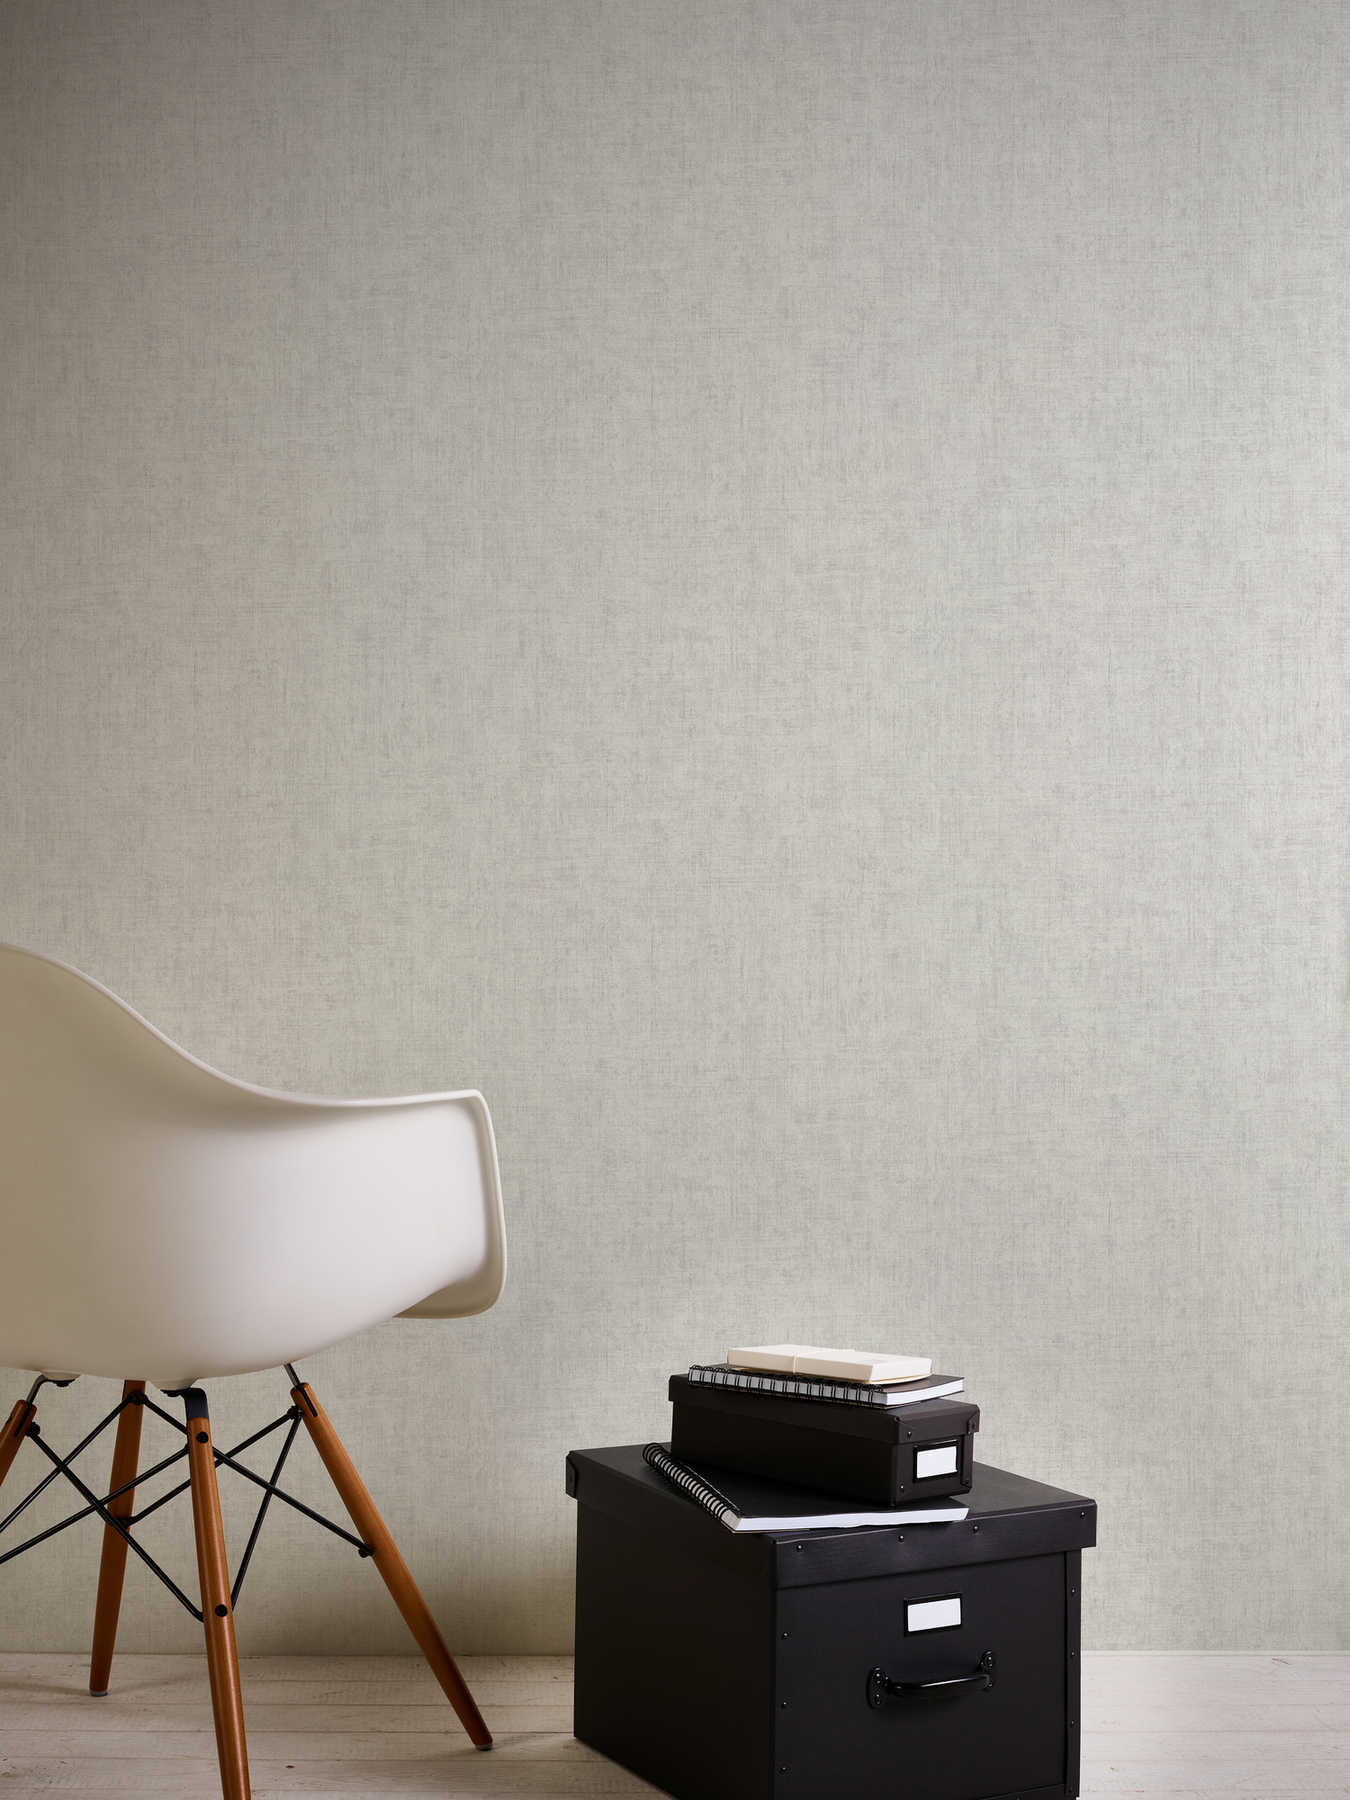             Papel pintado unitario gris claro con aspecto de yeso rústico en diseño vintage
        